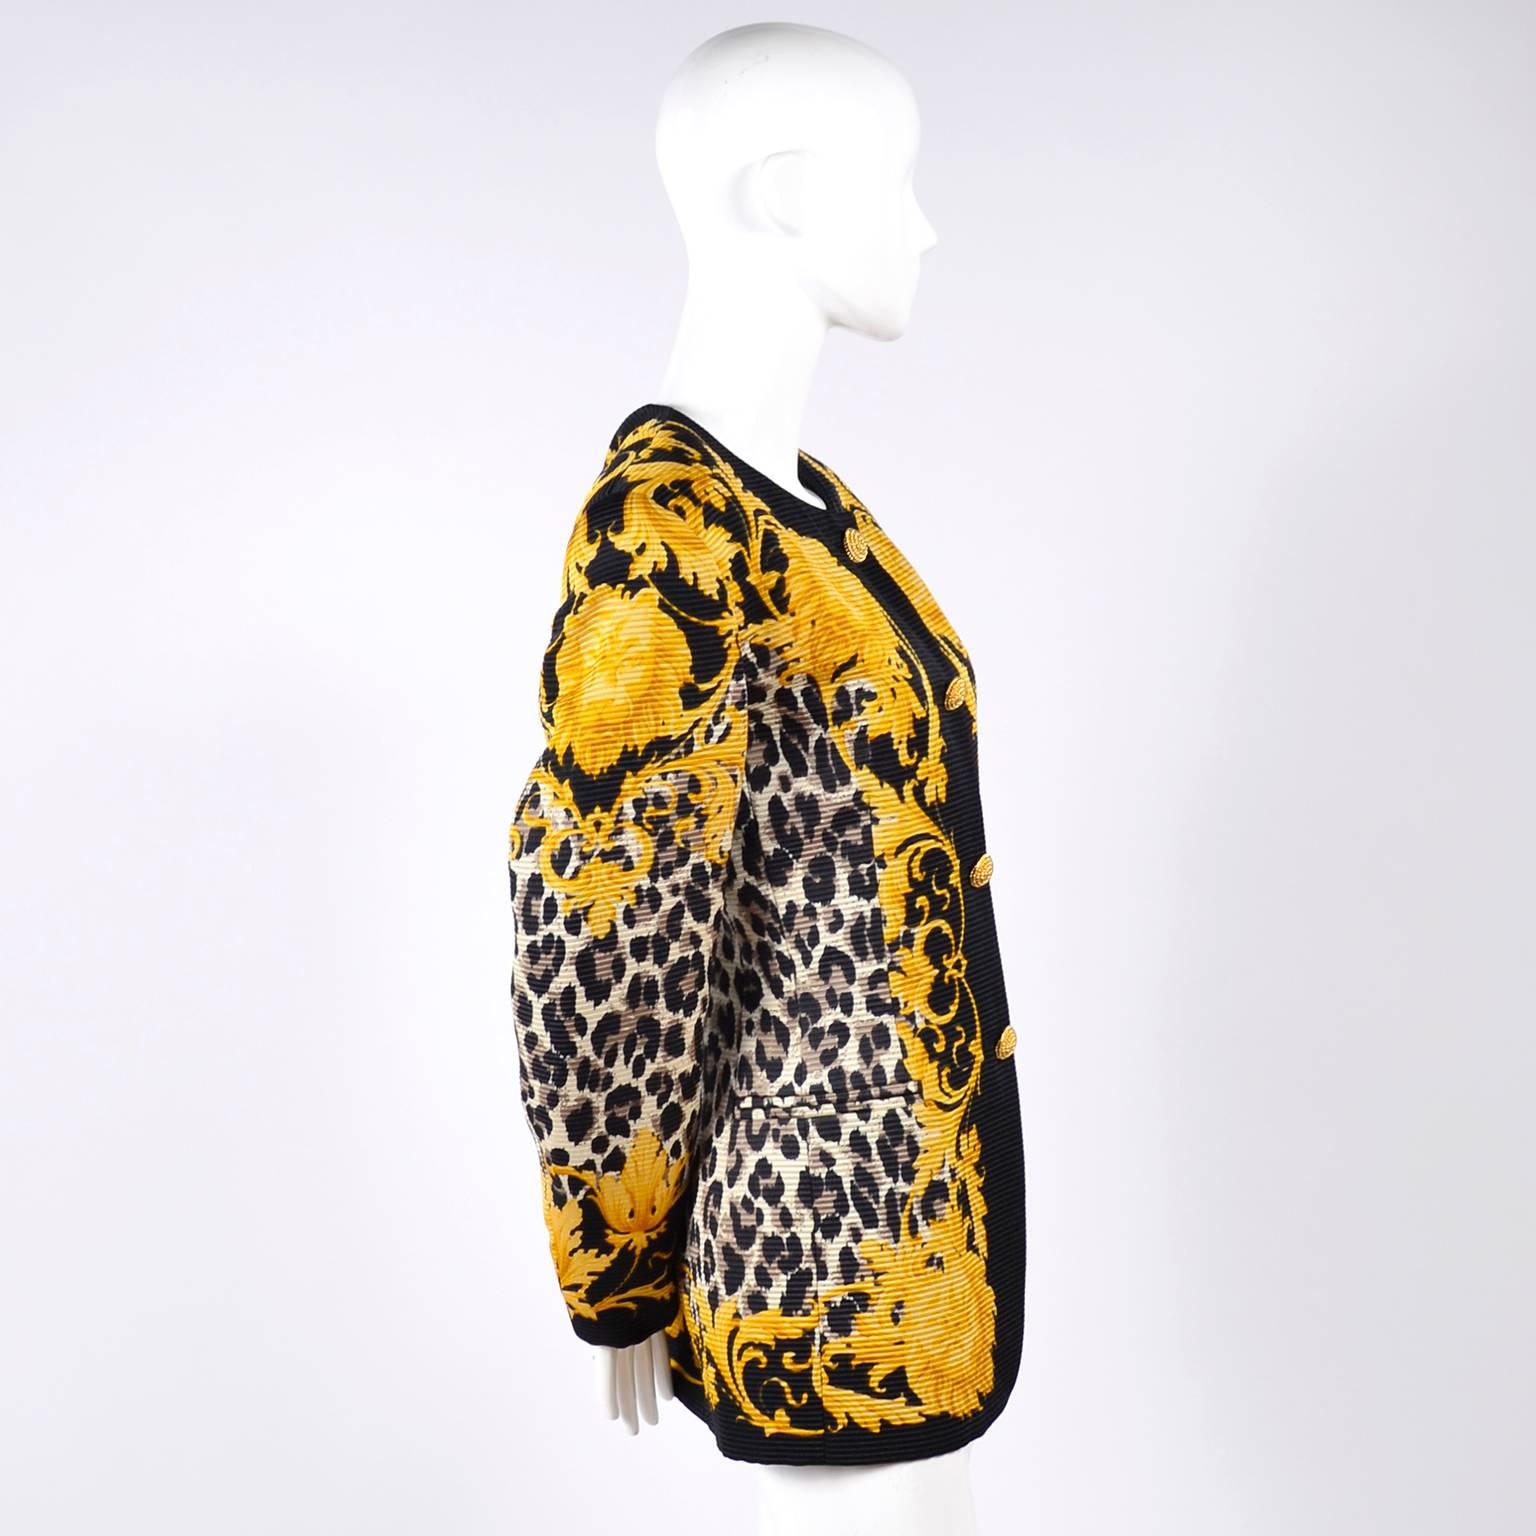 Escada Silk Blazer in Black & Gold Baroque Lion Animal Print by Margaretha Ley 1